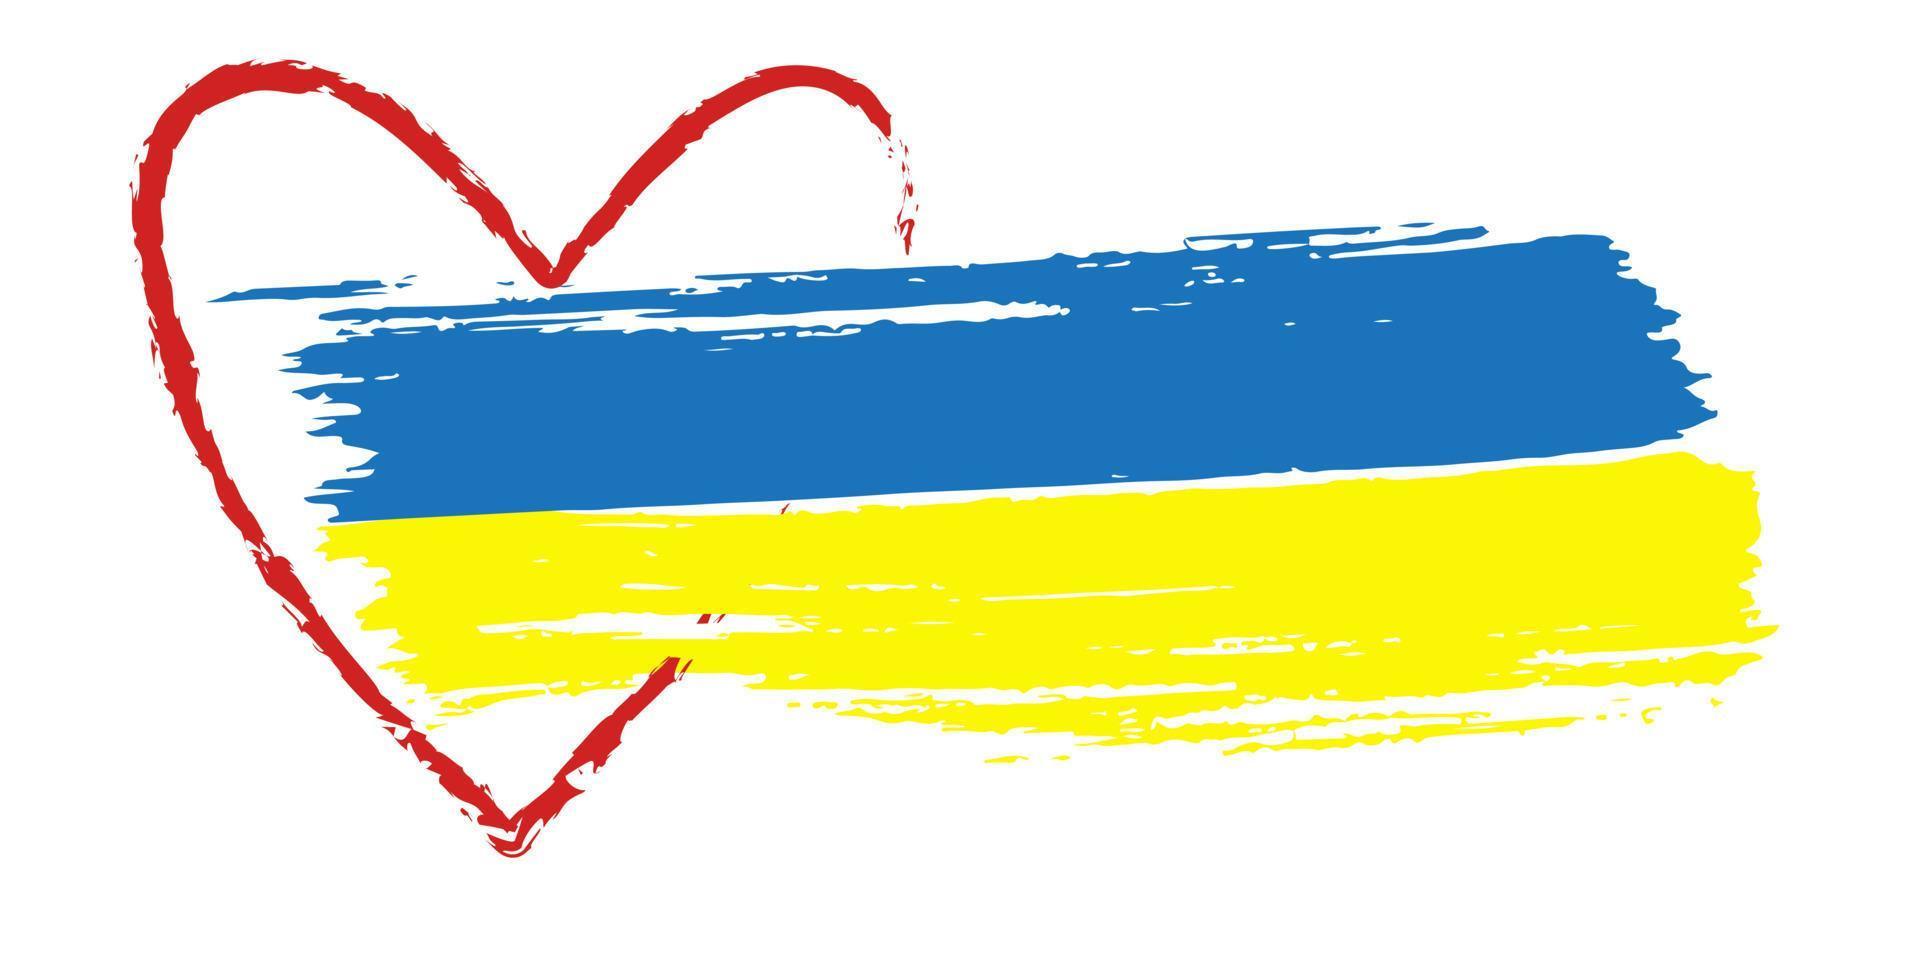 bandiera ucraina. bordo rosso del cuore. simbolismo di pennellata giallo blu. illustrazione vettoriale isolata.